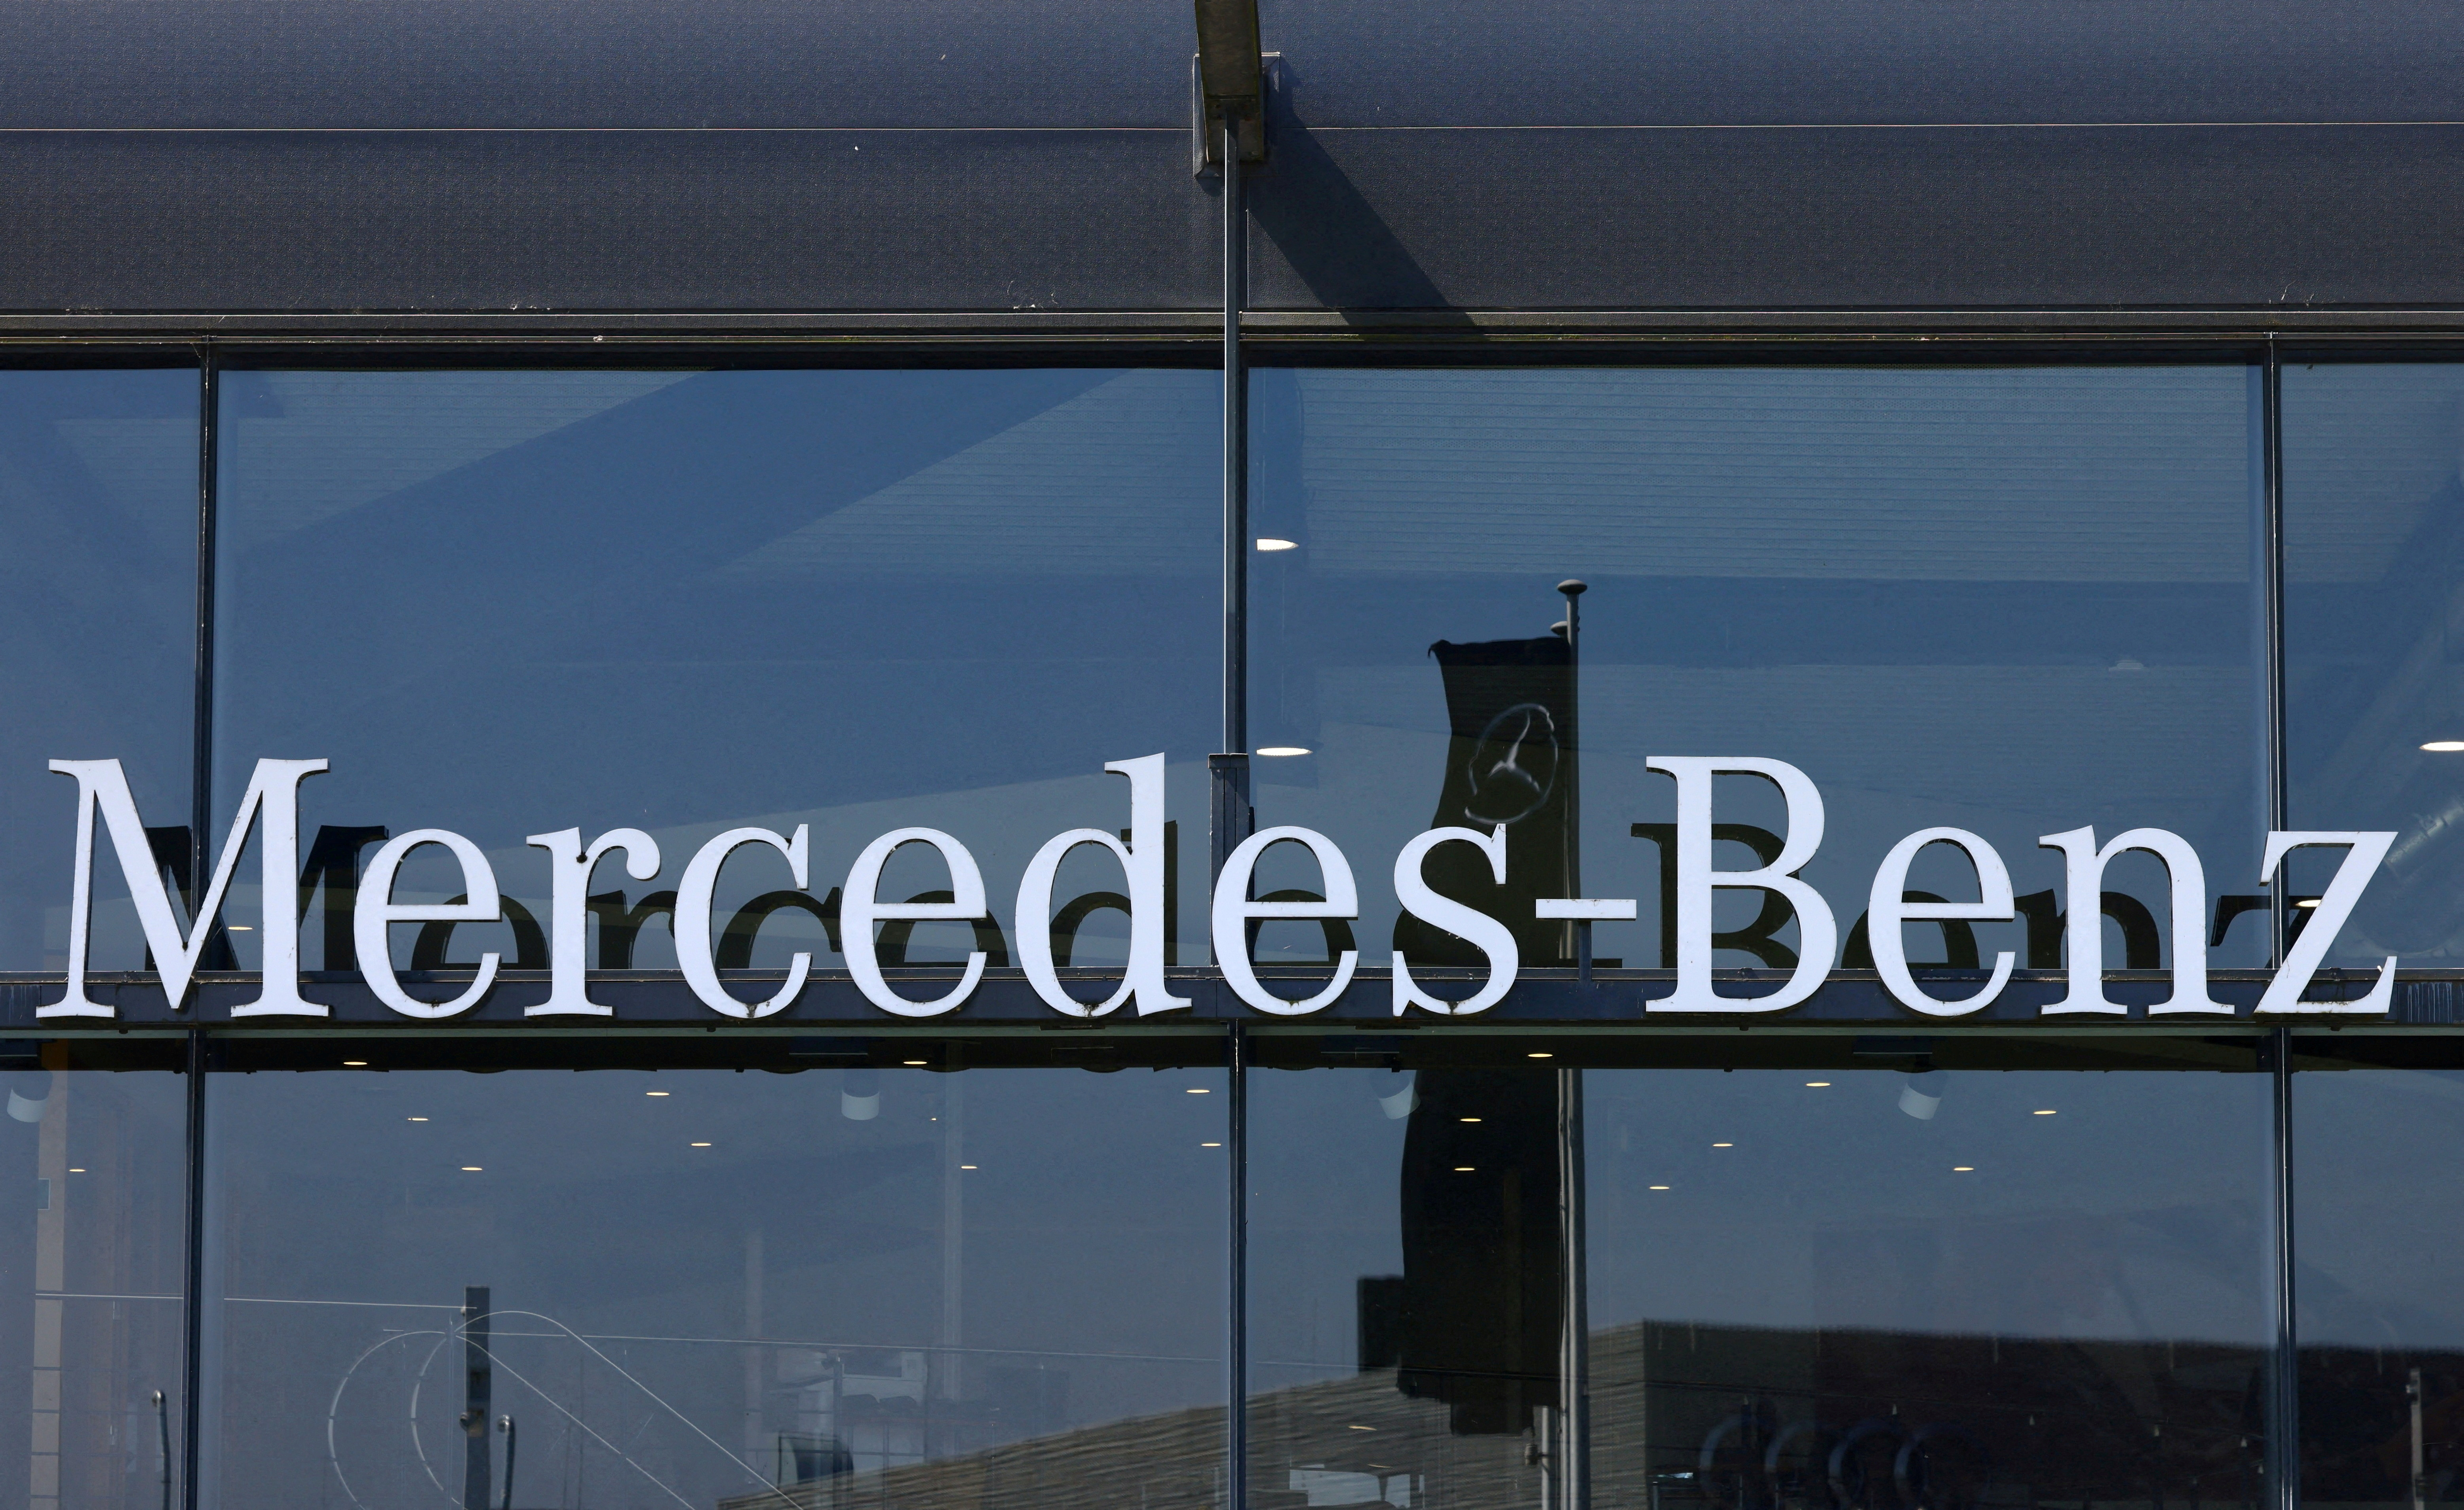 宾士集团（Mercedes-Benz）第1季获利锐减34%，福斯集团（Volkswagen）同期获利也下滑两成。路透